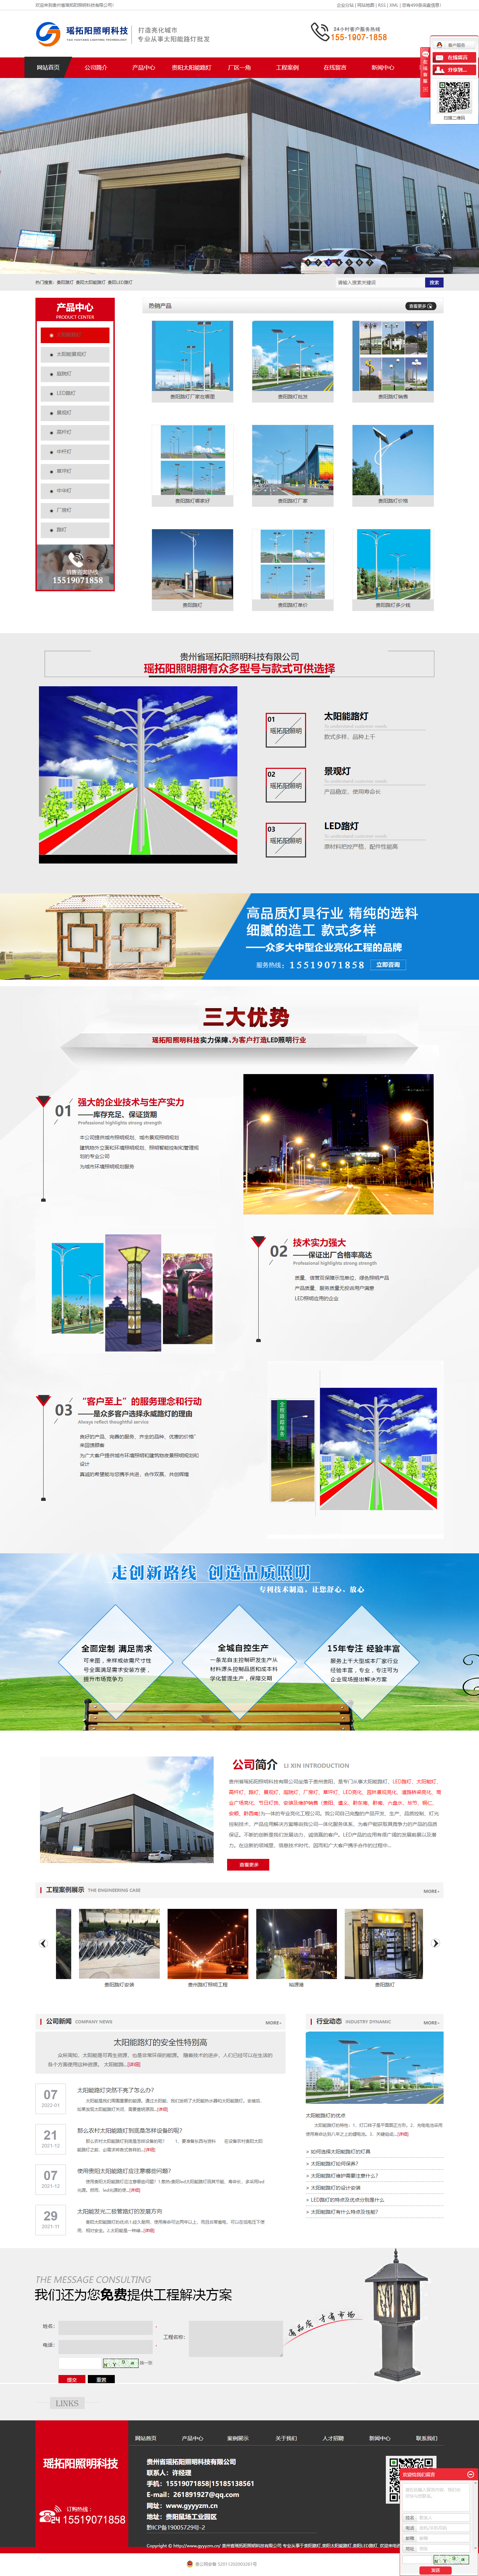 贵州省瑶拓阳照明科技有限公司网站案例